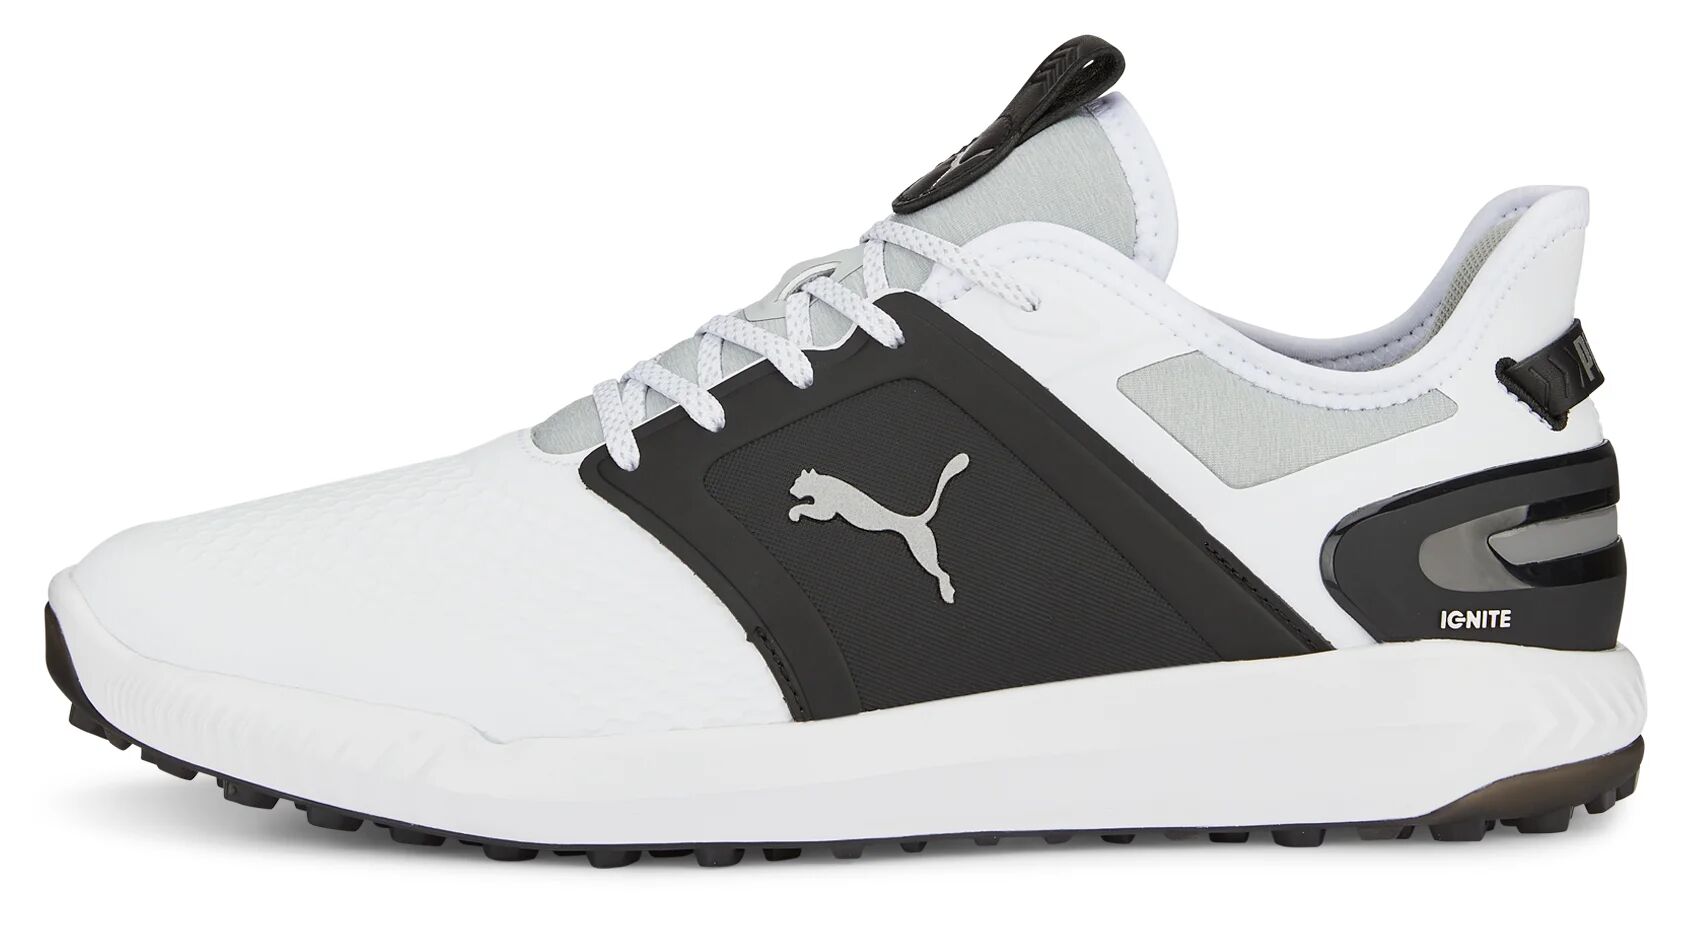 IGNITE Elevate Golf Shoes - PUMA White/PUMA Black/Metallic Silver - 8.5 - WIDE